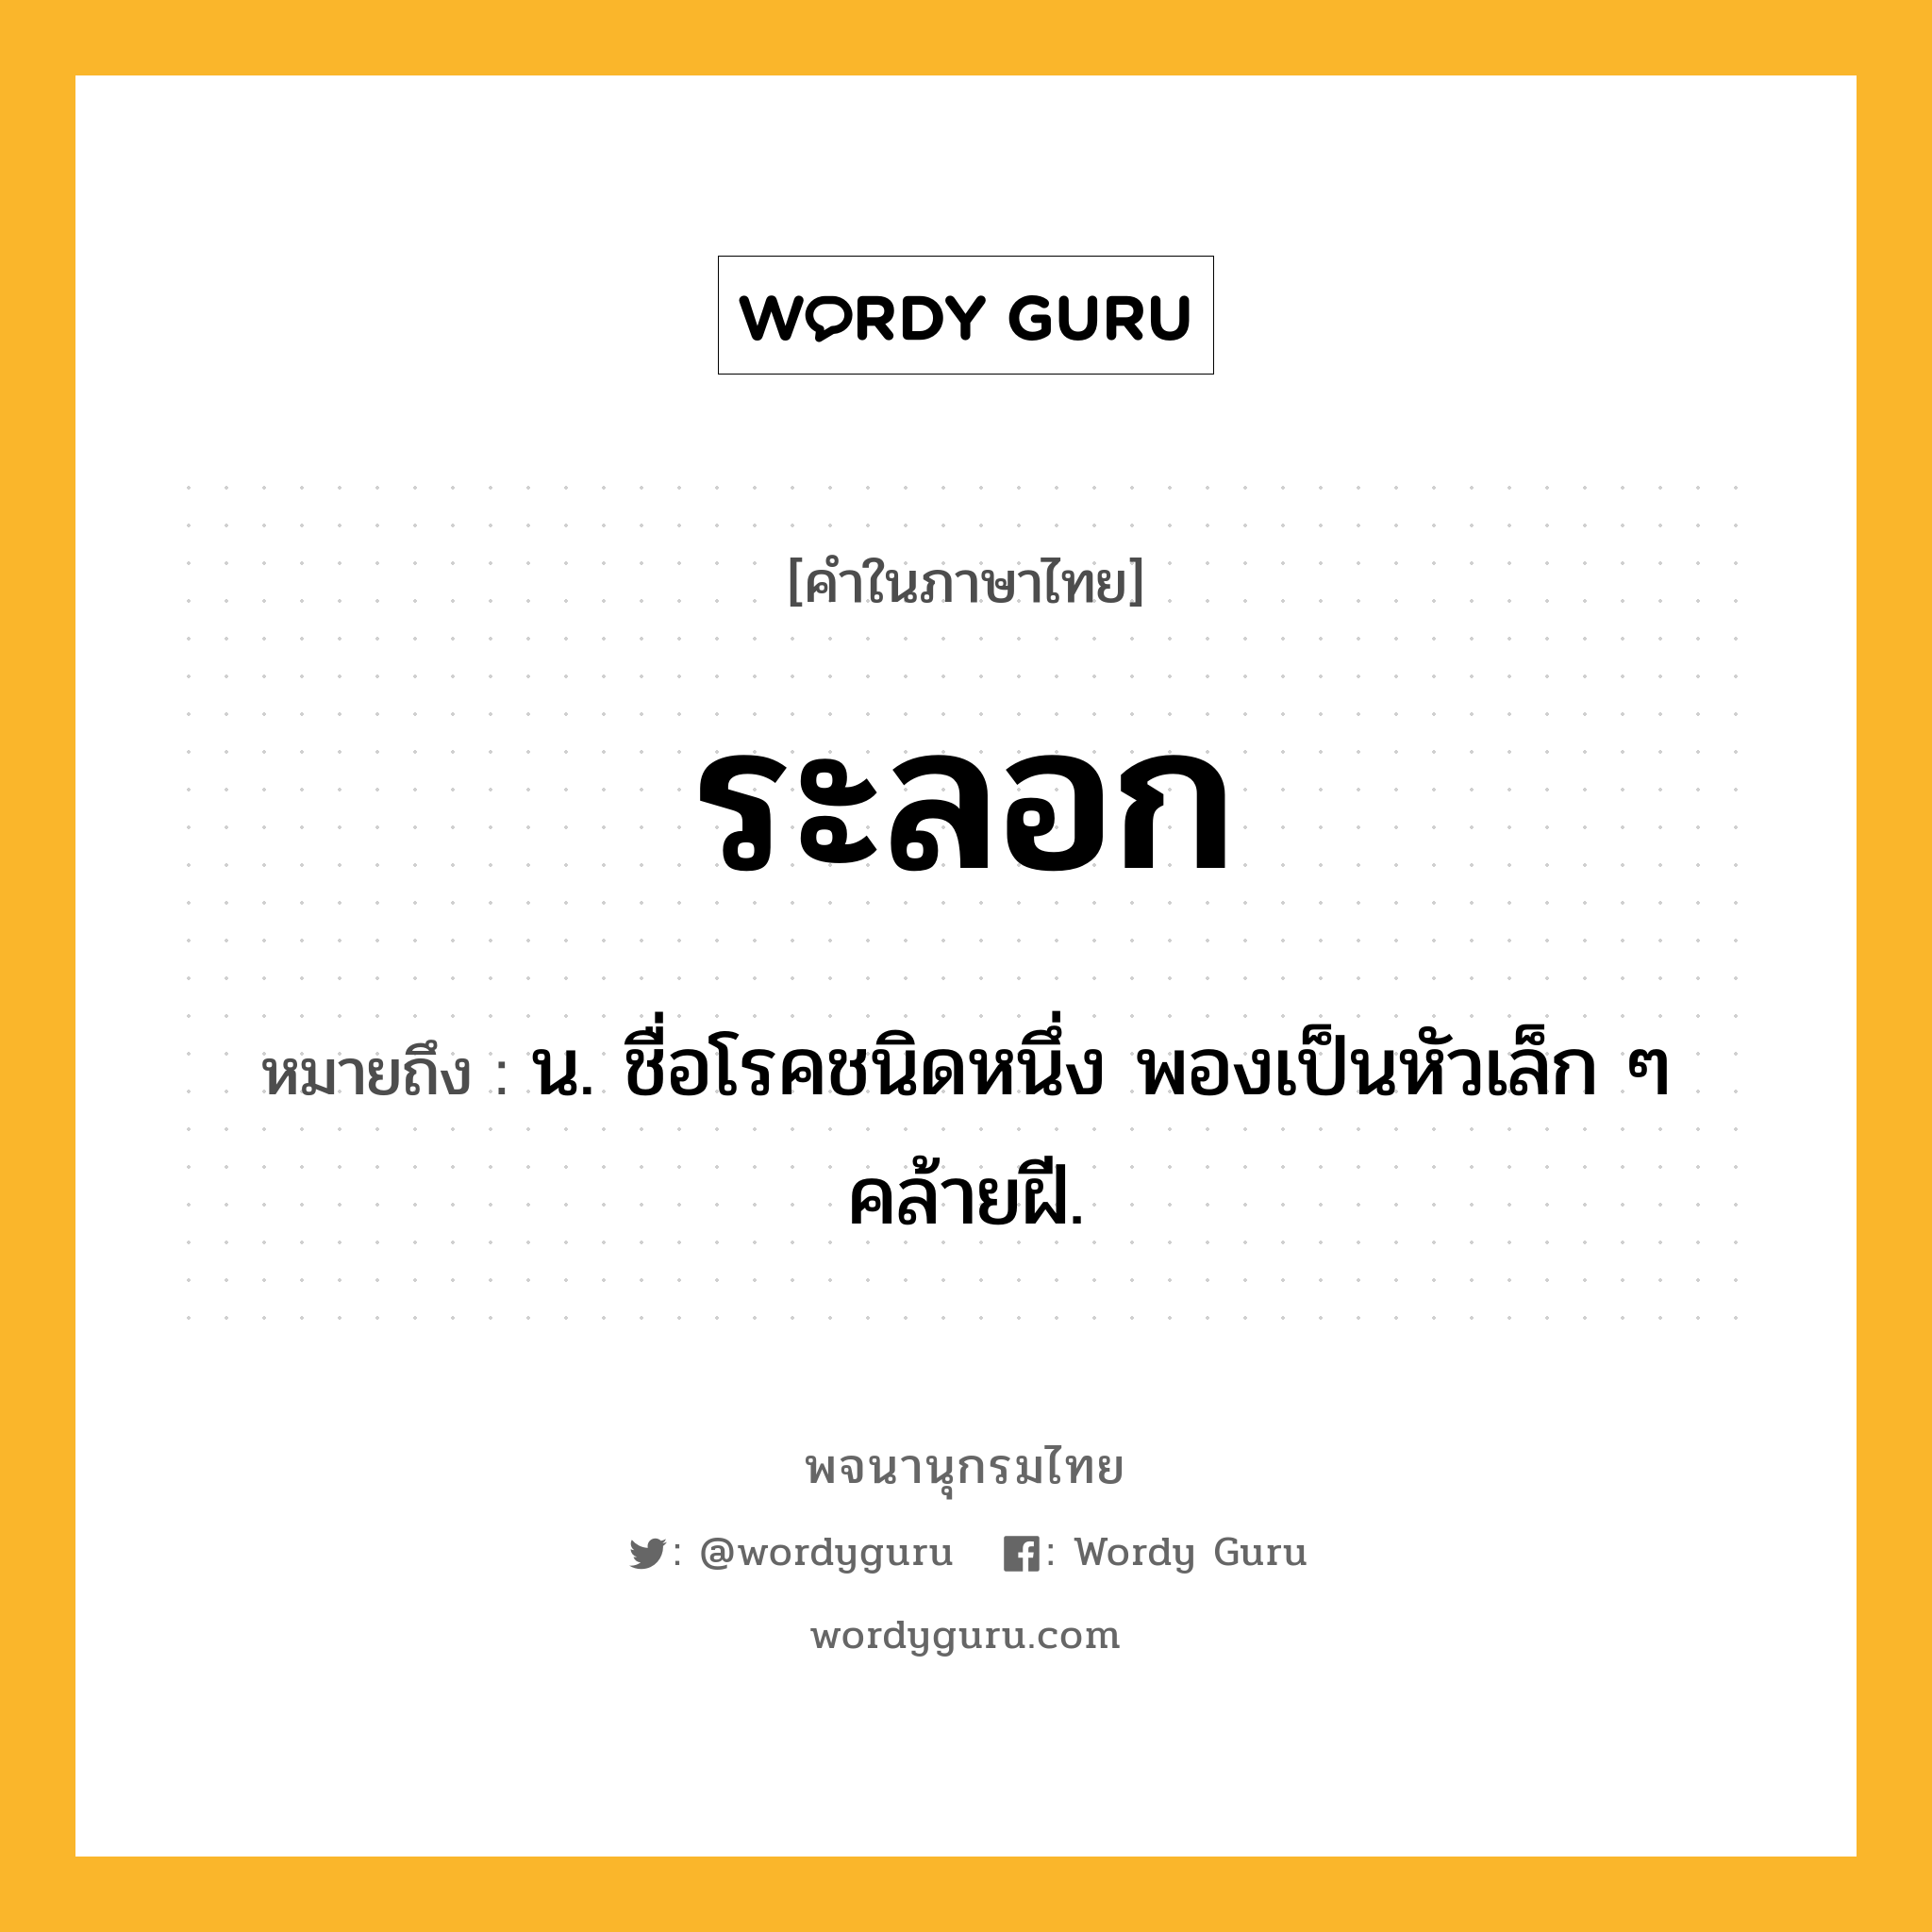 ระลอก หมายถึงอะไร?, คำในภาษาไทย ระลอก หมายถึง น. ชื่อโรคชนิดหนึ่ง พองเป็นหัวเล็ก ๆ คล้ายฝี.